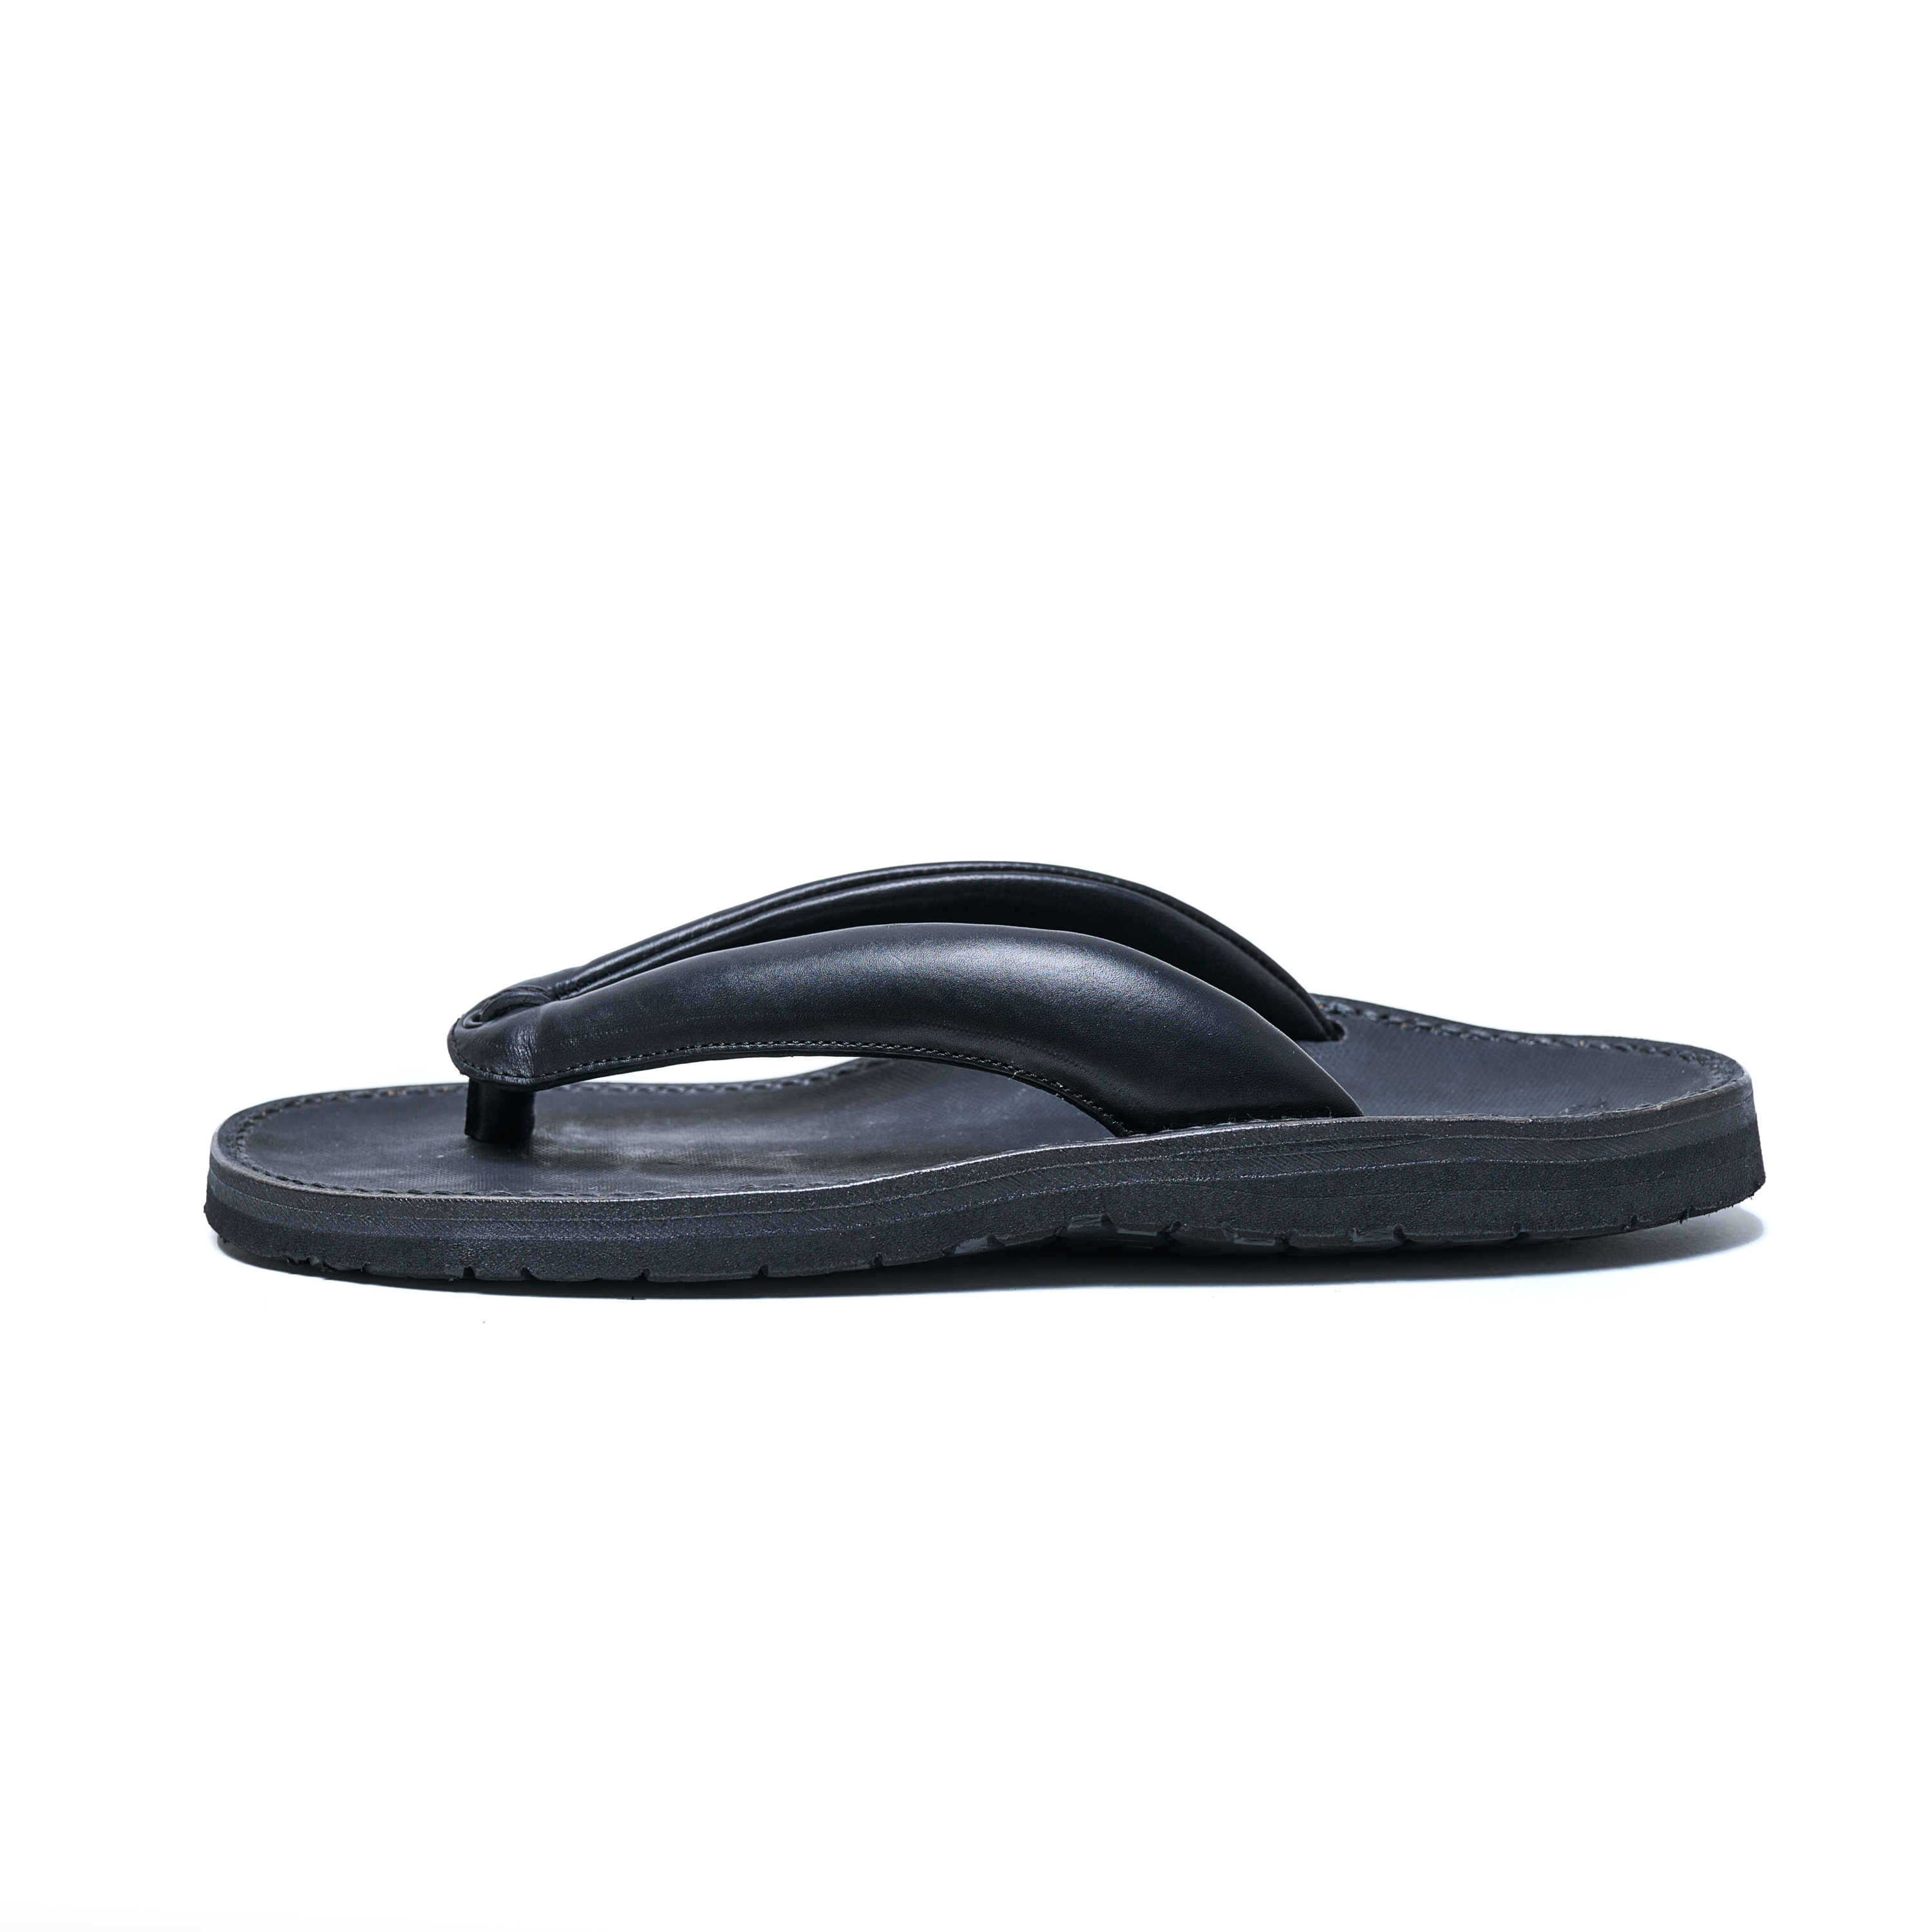 Tokyo Sandal - Setta Sandal (Black)